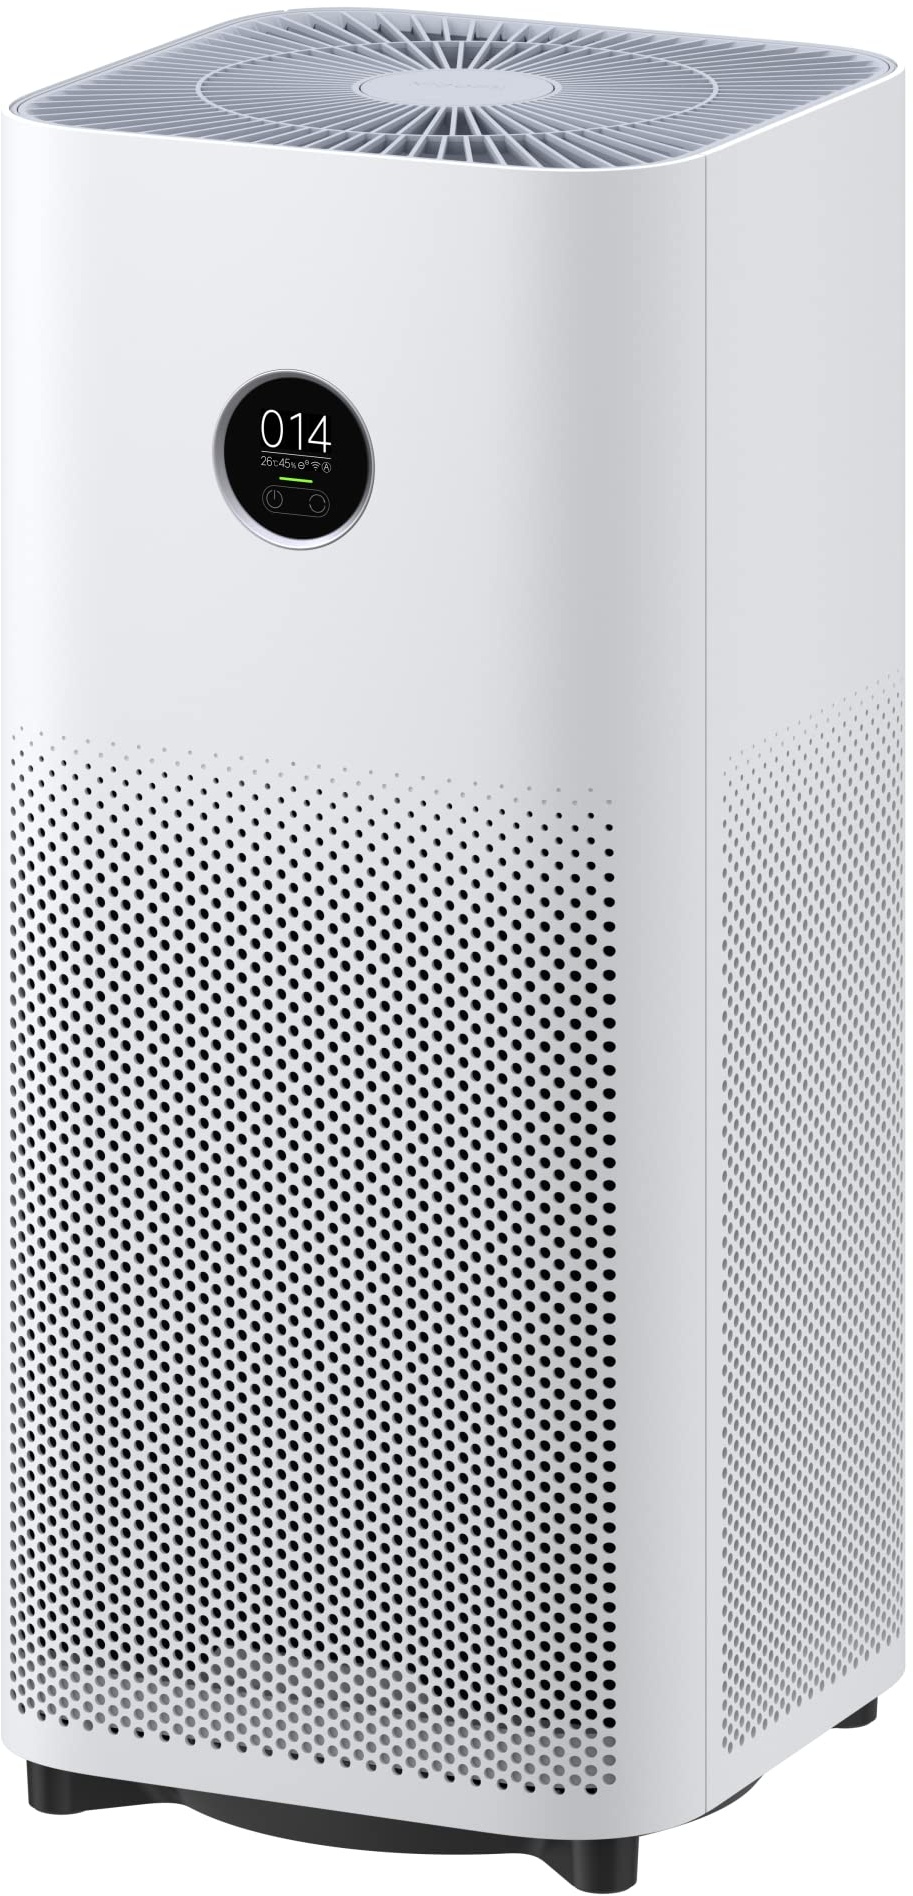 Xiaomi Smart Air Purifier 4 Luftreiniger (beseitigt Bis Zu 99,97% Tierhaare, Pollen, Staub, Viren & Aerosole: PCADR 400m3/h, FCADR 150m3/h, Optimal Für 48m2, Touch Display, App- & Sprachsteuerung)